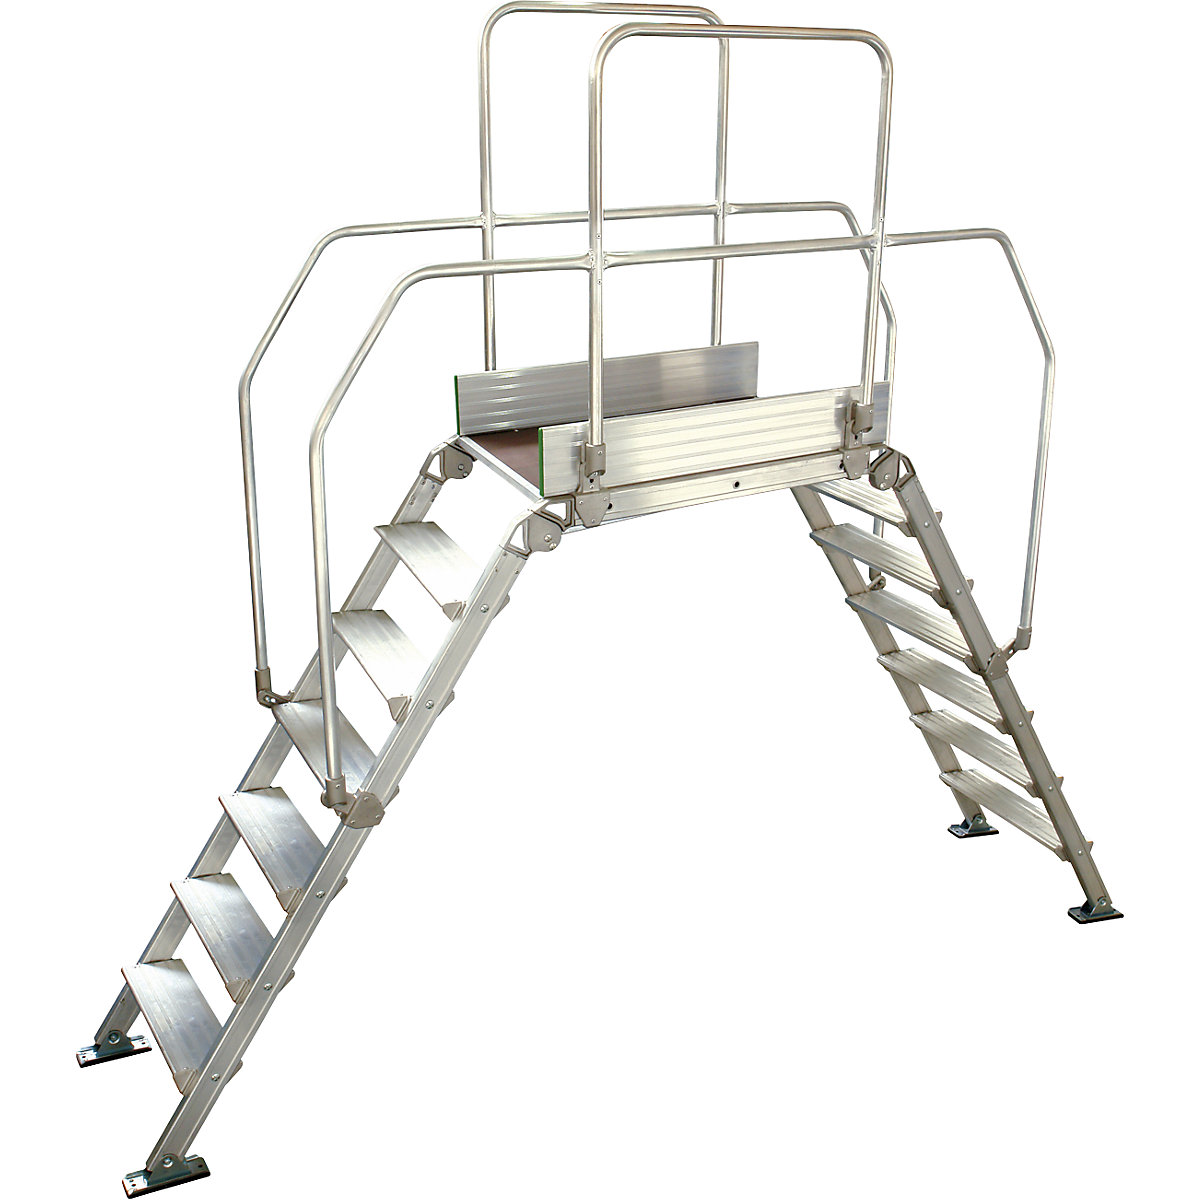 Aluminium ladderbrug, totale belasting 200 kg, 7 treden, platform 900 x 530 mm-5